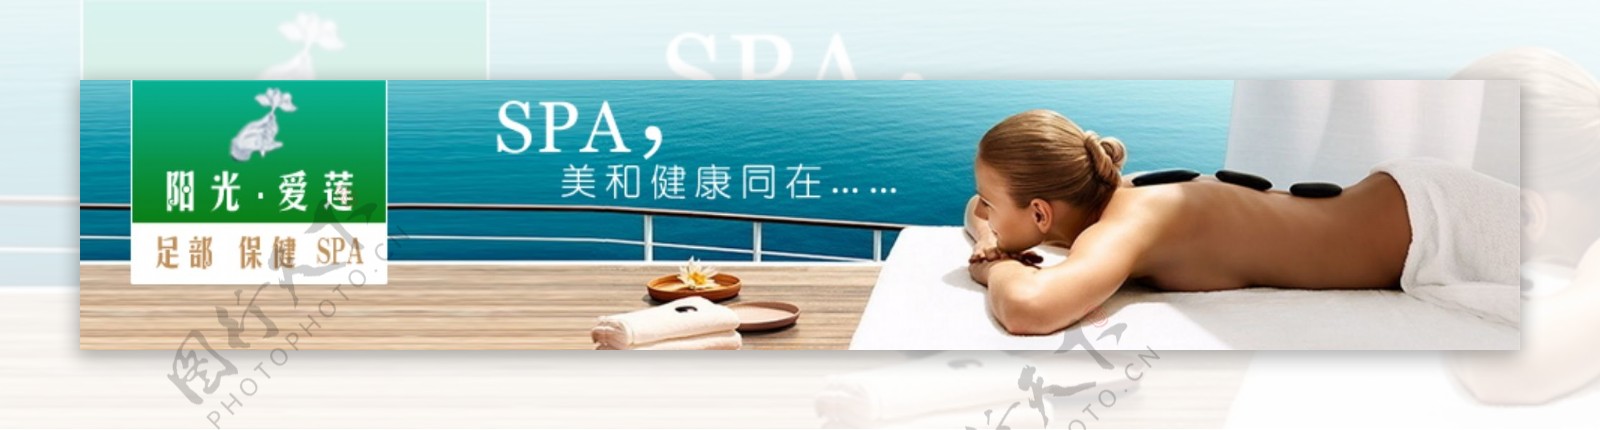 阳光爱莲SPA网页广告设计模板图片